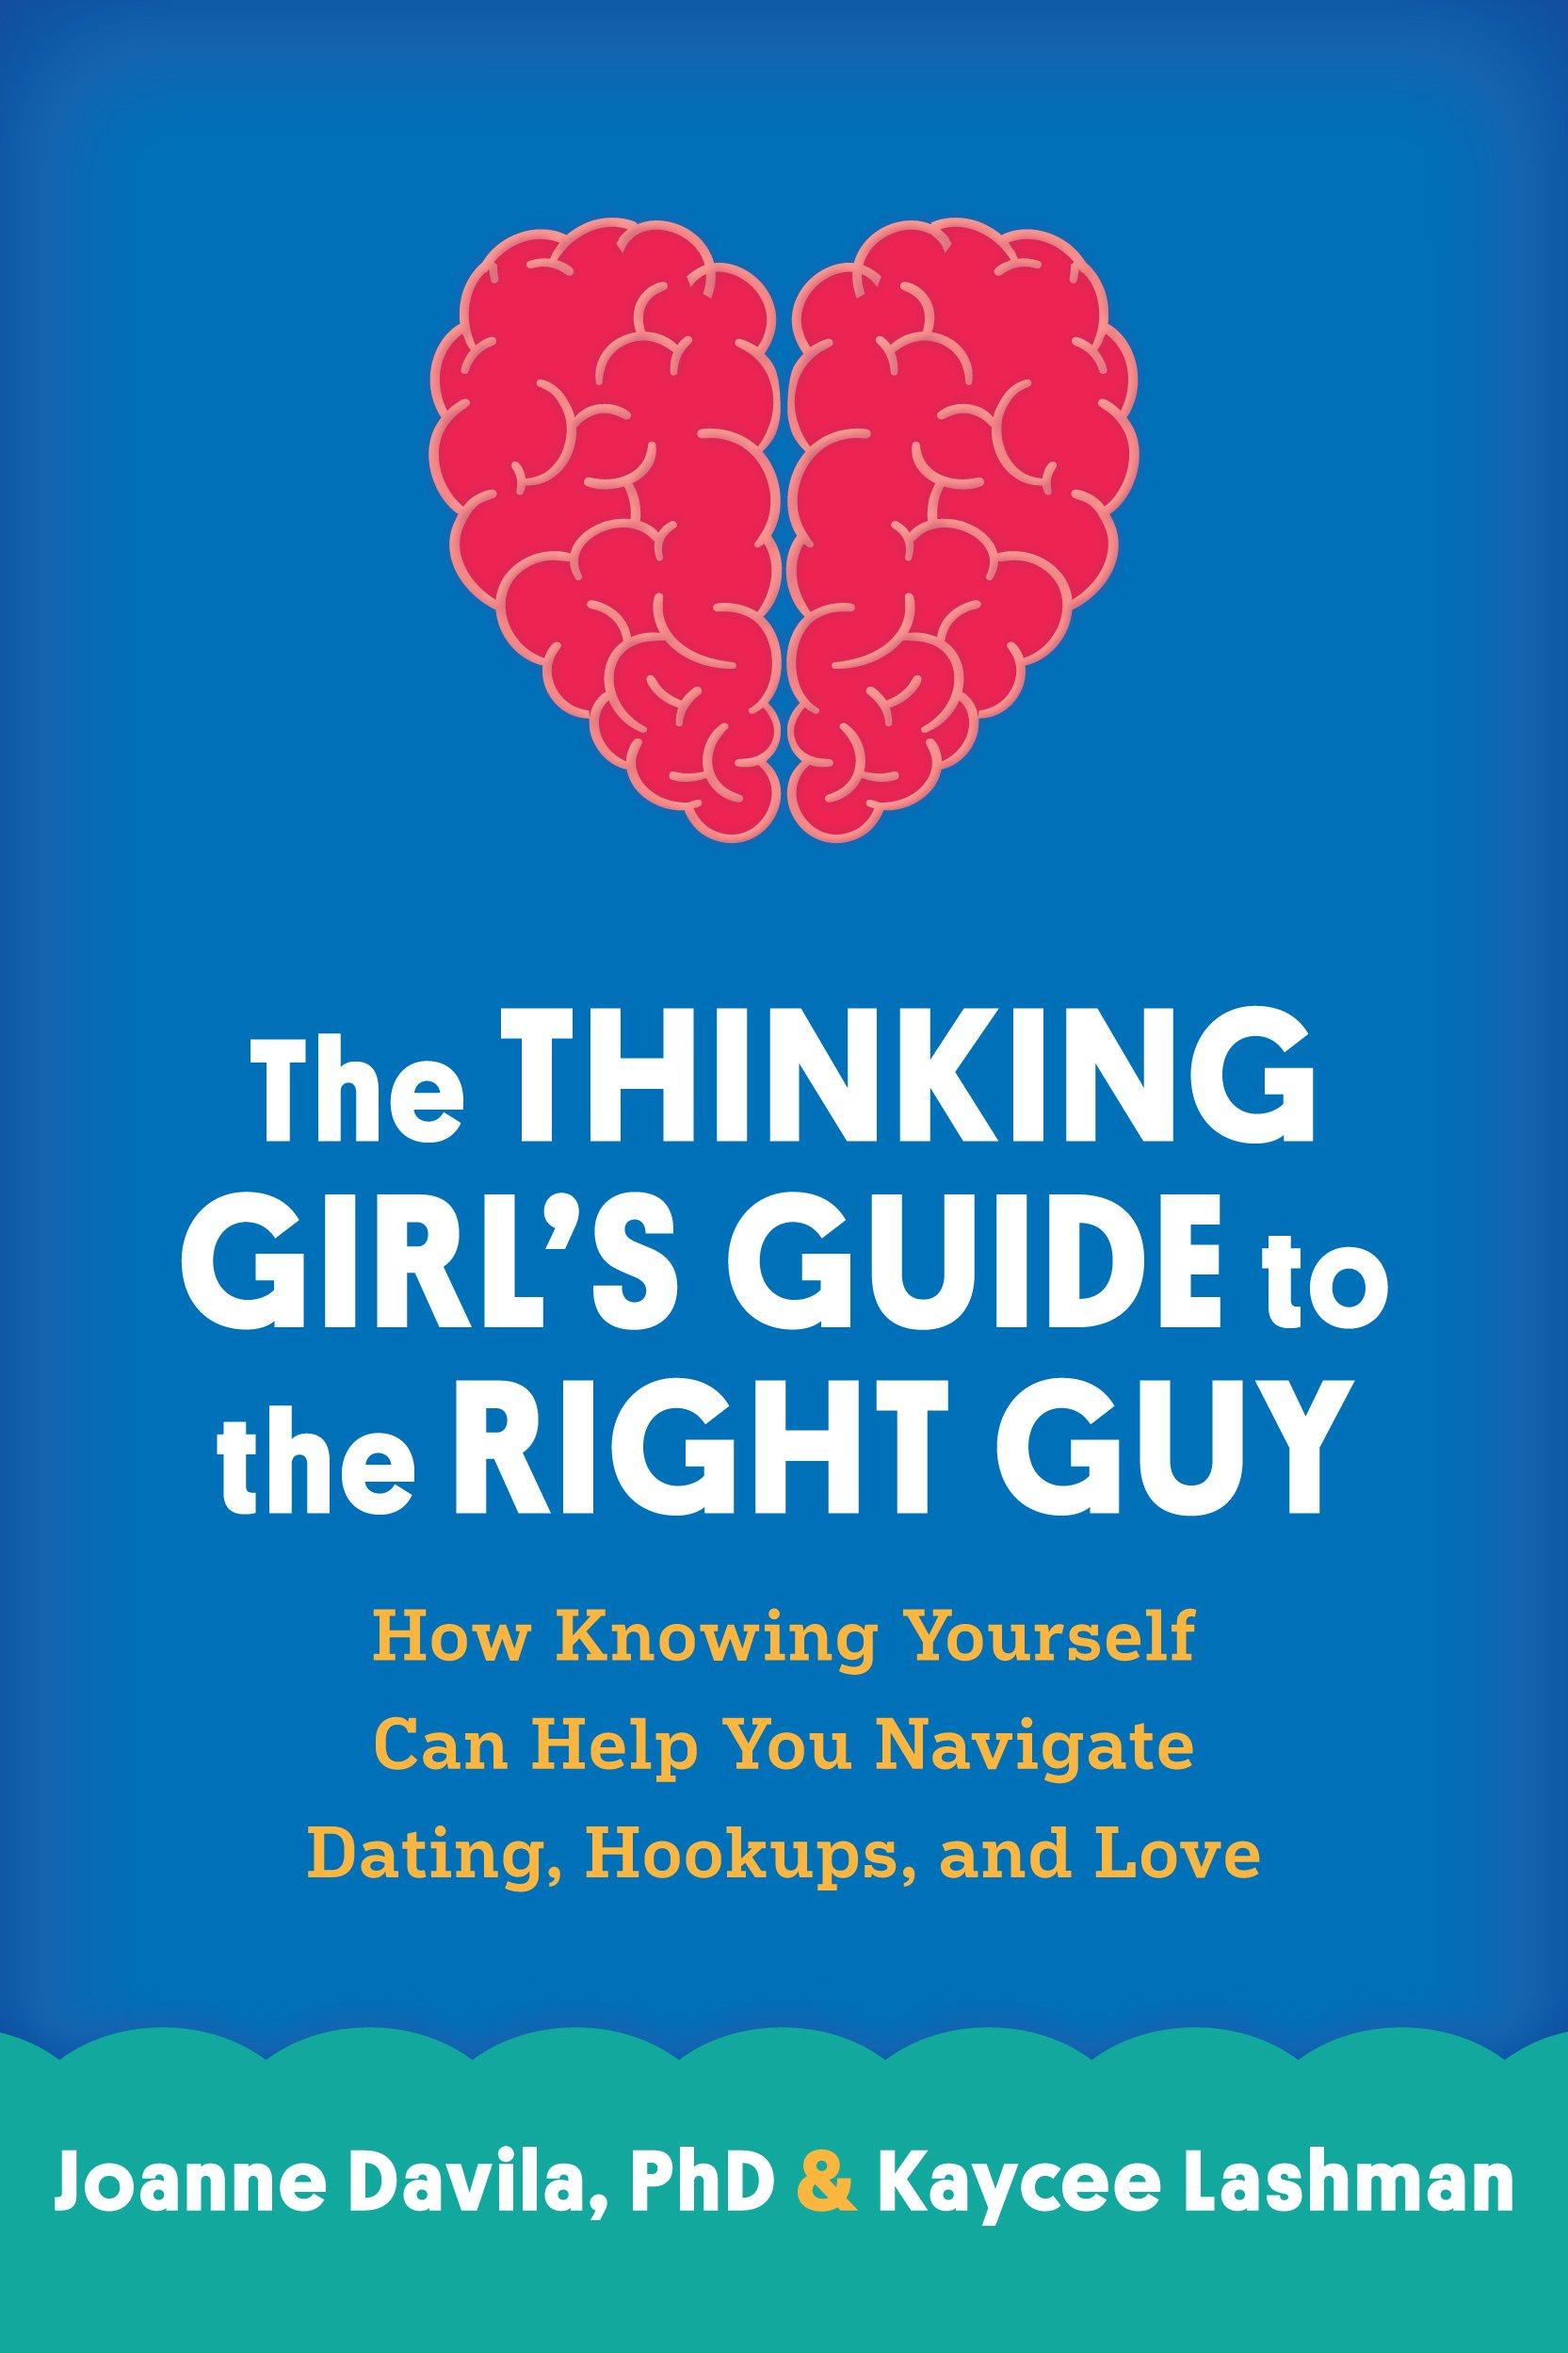 Webthe_thinking_girl's_guide